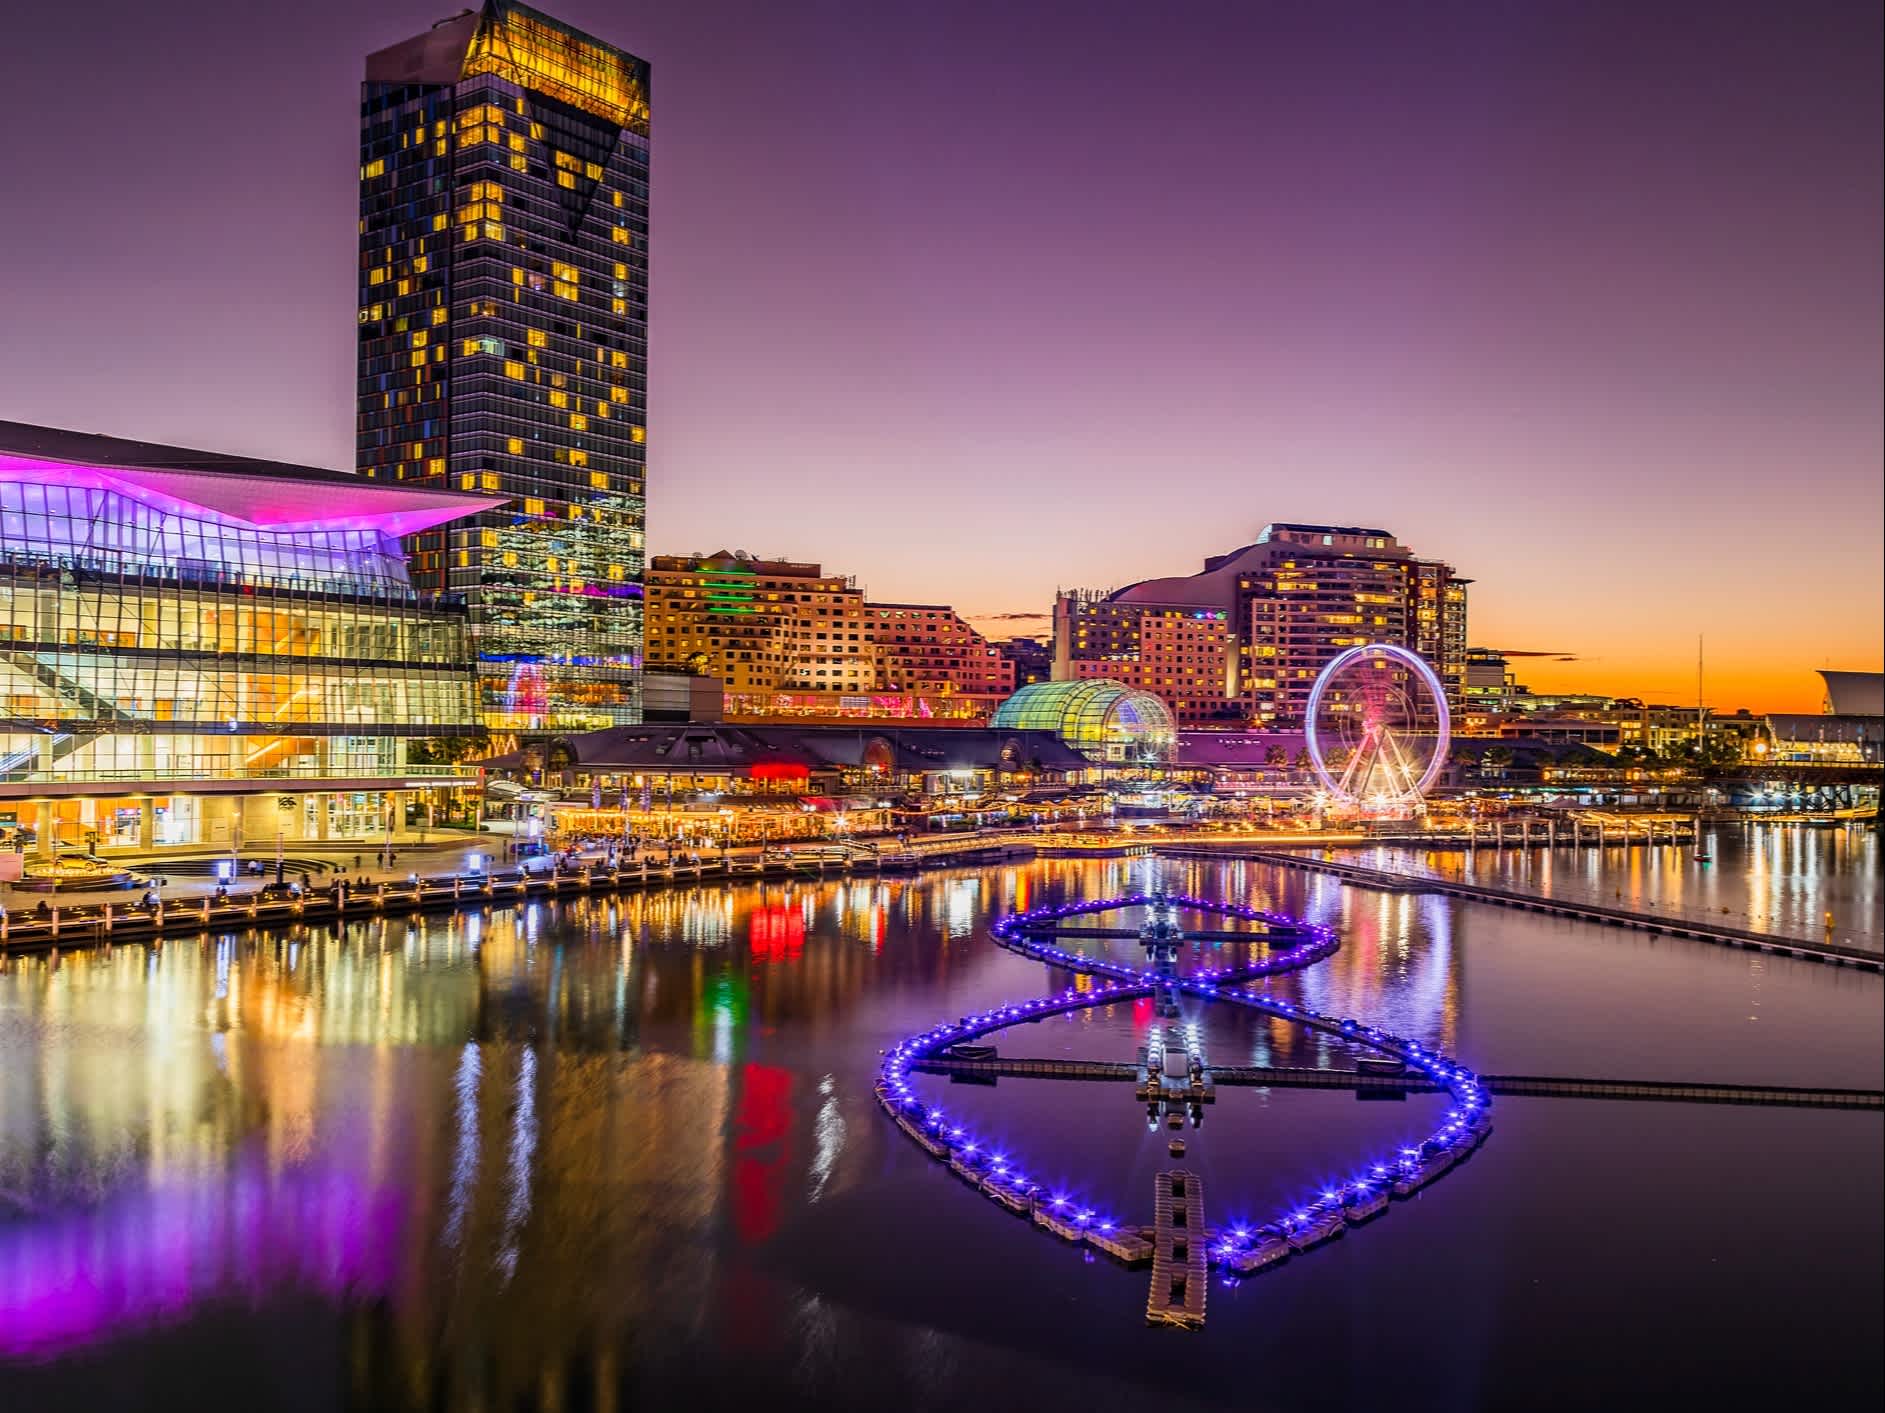 Bâtiments et installations illuminés de couleurs vives dans le port de Sydney